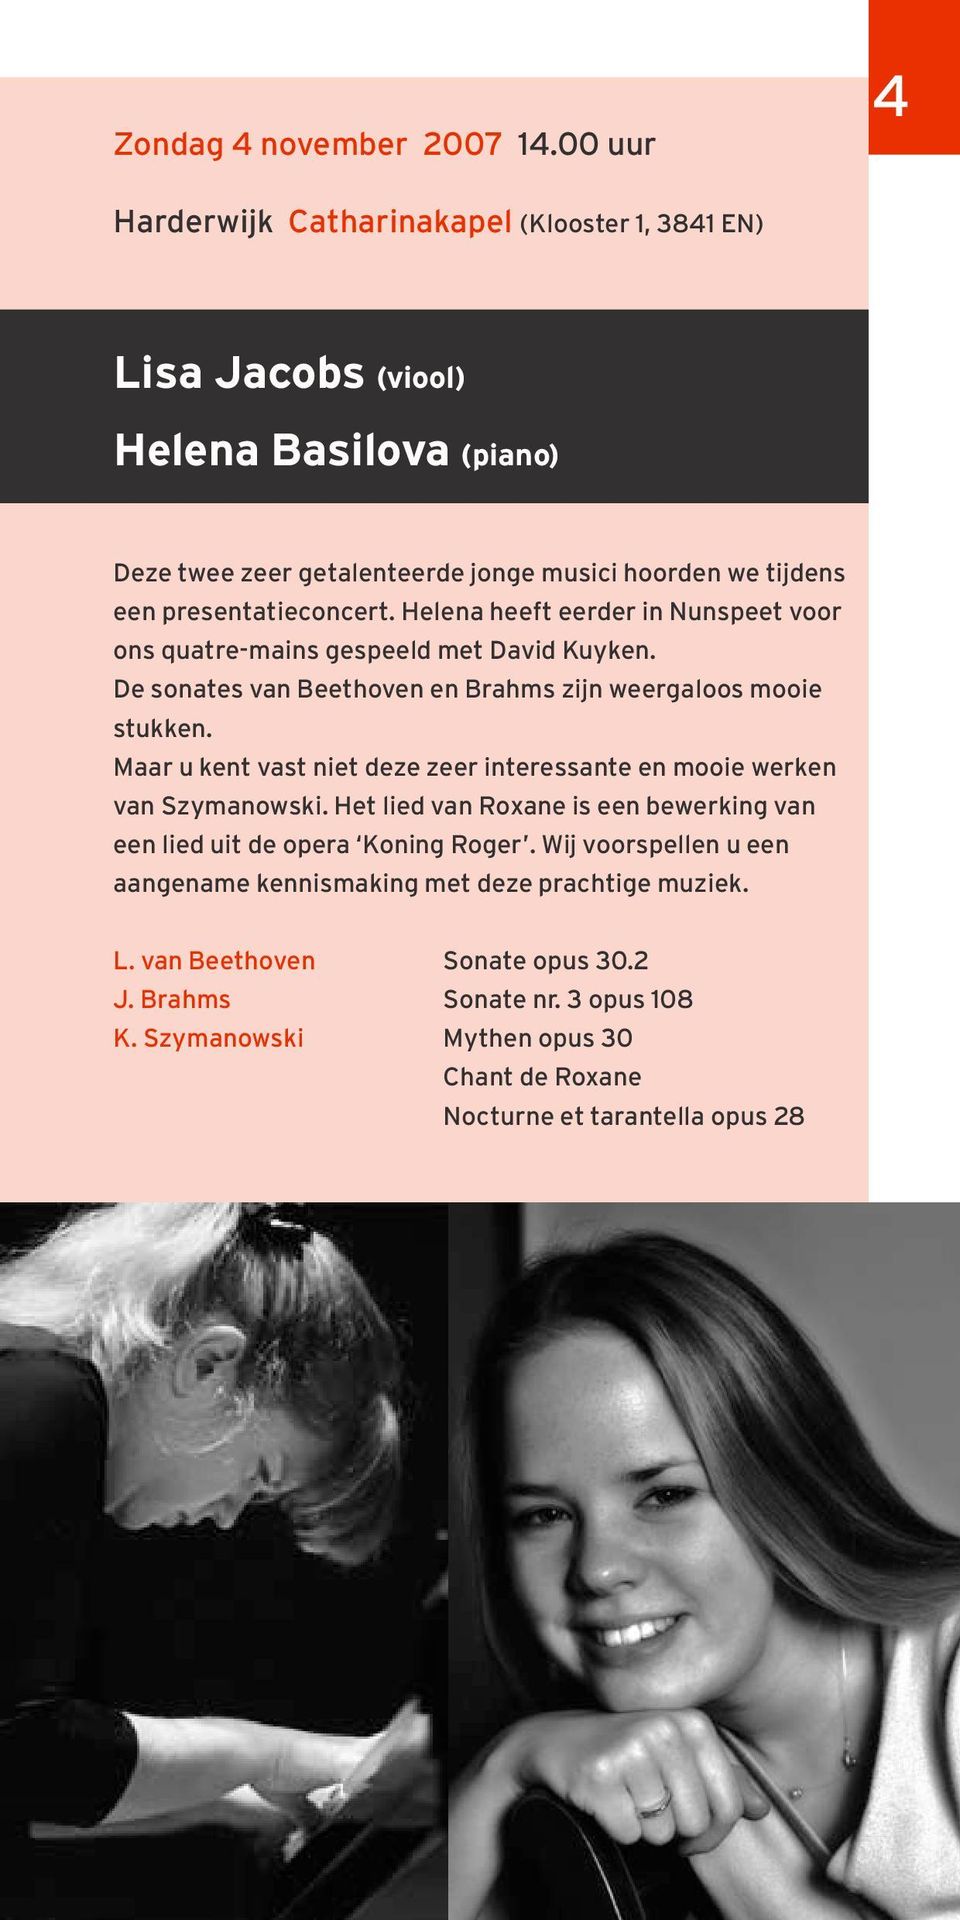 presentatieconcert. Helena heeft eerder in Nunspeet voor ons quatre-mains gespeeld met David Kuyken. De sonates van Beethoven en Brahms zijn weergaloos mooie stukken.